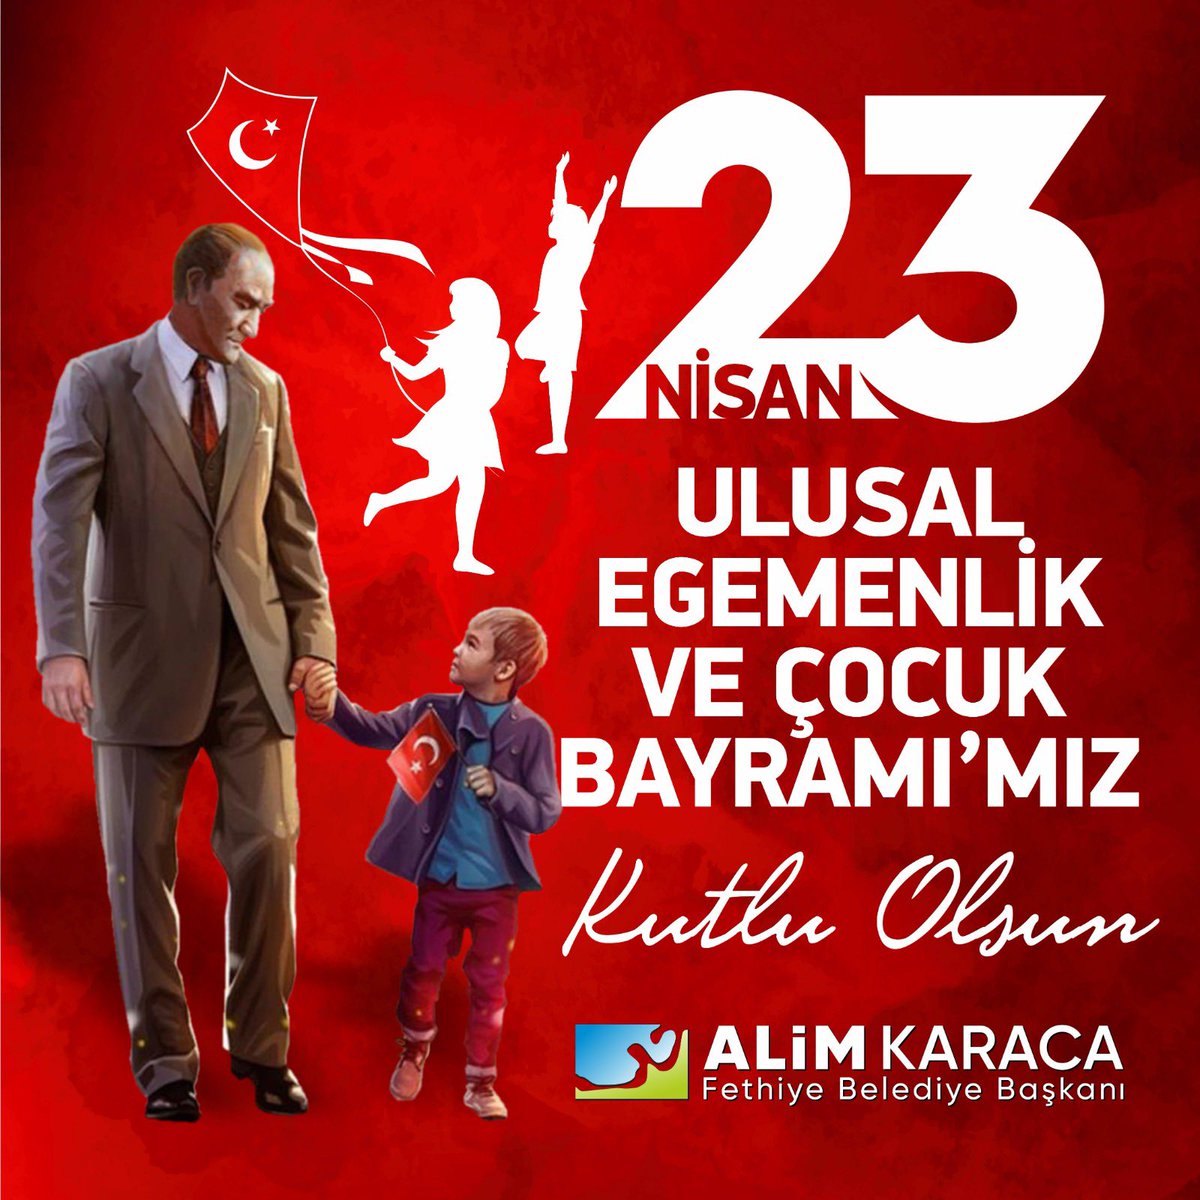 “Egemenlik kayıtsız şartsız milletindir” diyen, Gazi Mustafa Kemal Atatürk’ün dünyada çocuklara ithaf ettiği, ilk ve tek bayram olan 23 Nisan Ulusal Egemenlik ve Çocuk Bayramımızı kutluyoruz. Ulusal egemenliğimizi ve milletimizin sarsılmaz iradesini temsil eden Büyük Millet…